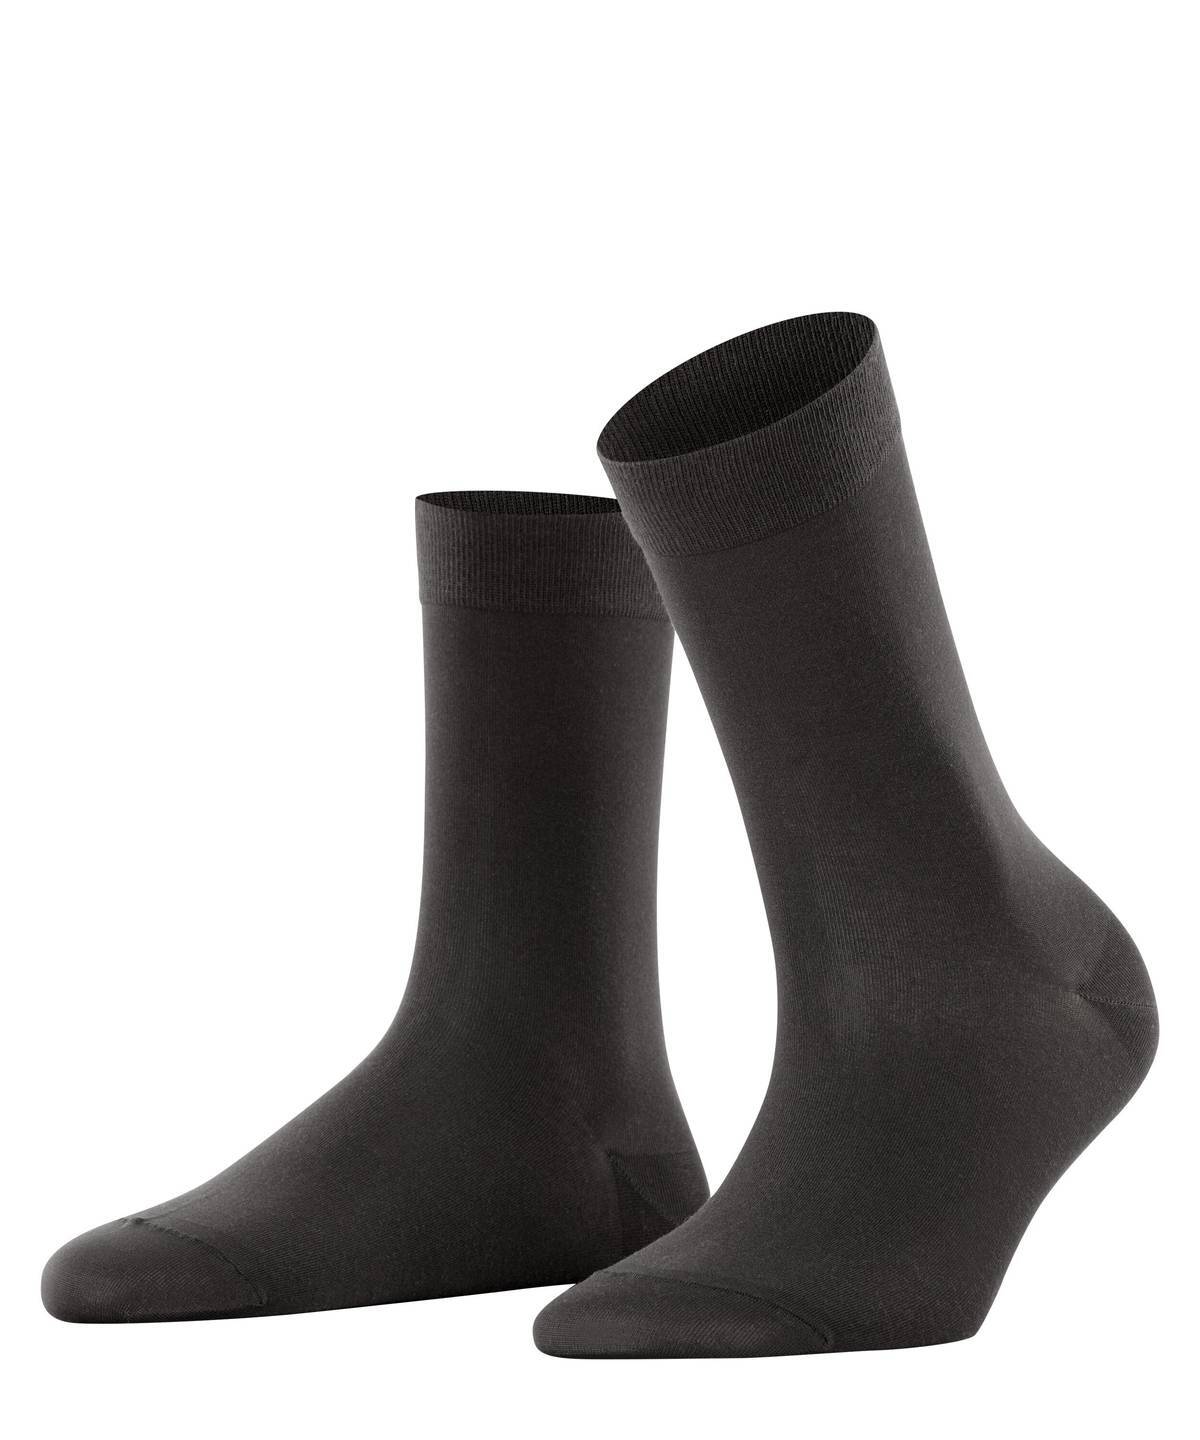 Falke Damen Socken Hersteller: Falke Bestellnummer:4004758960810